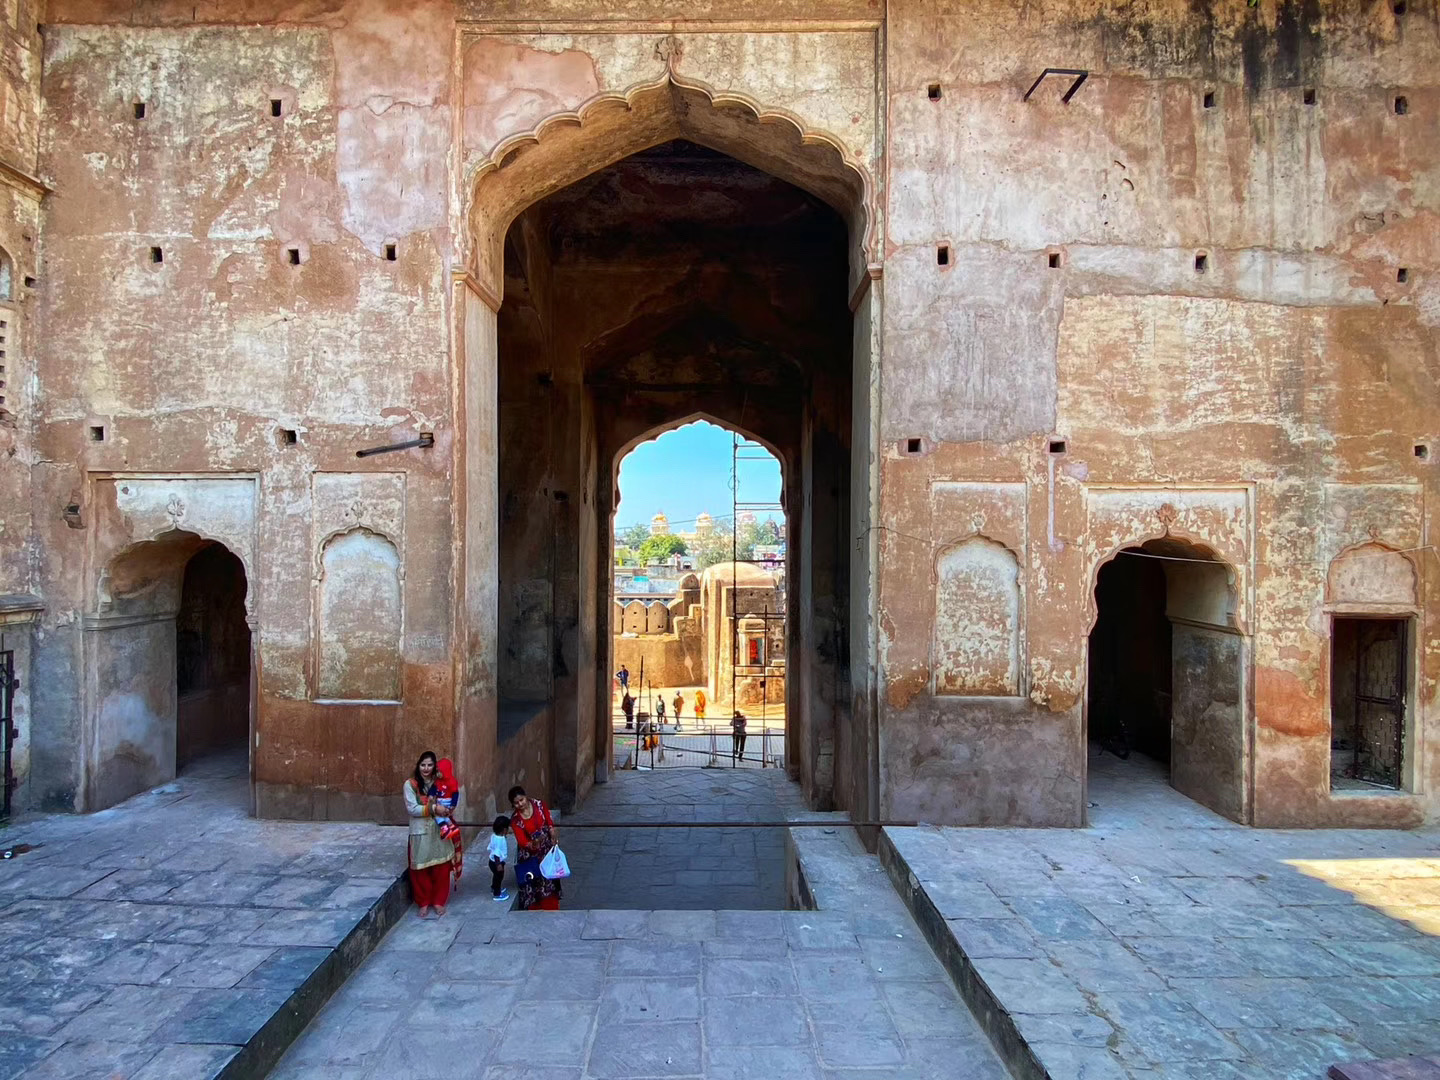 欧查古堡相对印度来说是一个比较冷门的经典，也是我这次印度行的第一个古堡。它结合了印度教方正的庭院和伊